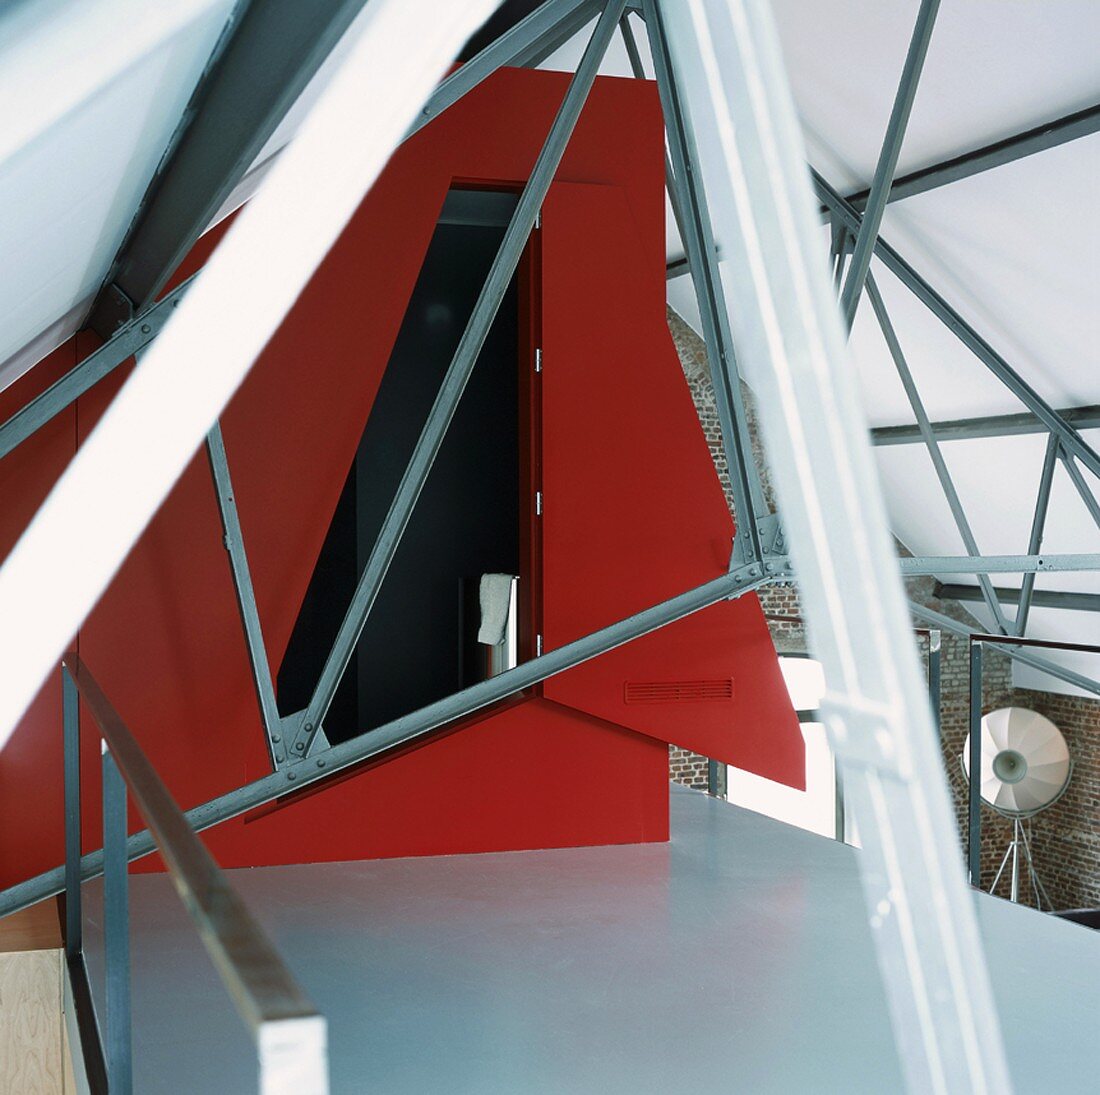 Roter Einbau zwischen Stahlträgern auf der Galerie eines Lofts mit Backsteinwänden